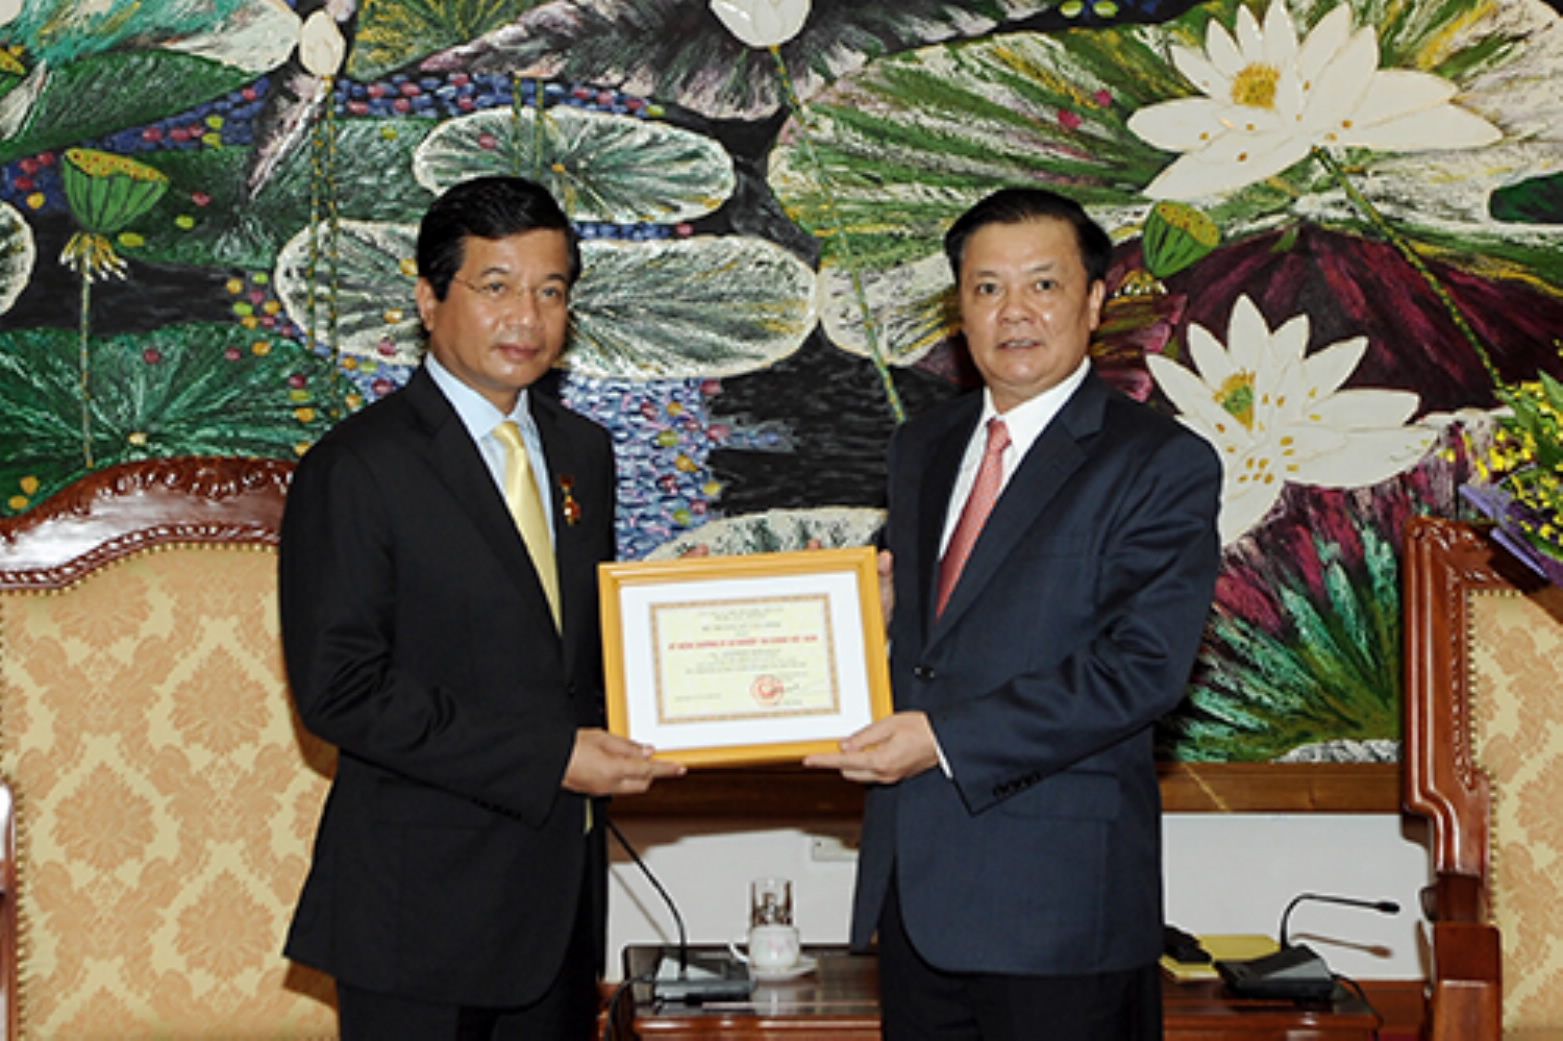 Ai được xét tặng Kỷ niệm chương “Vì sự nghiệp Tài chính Việt Nam”?